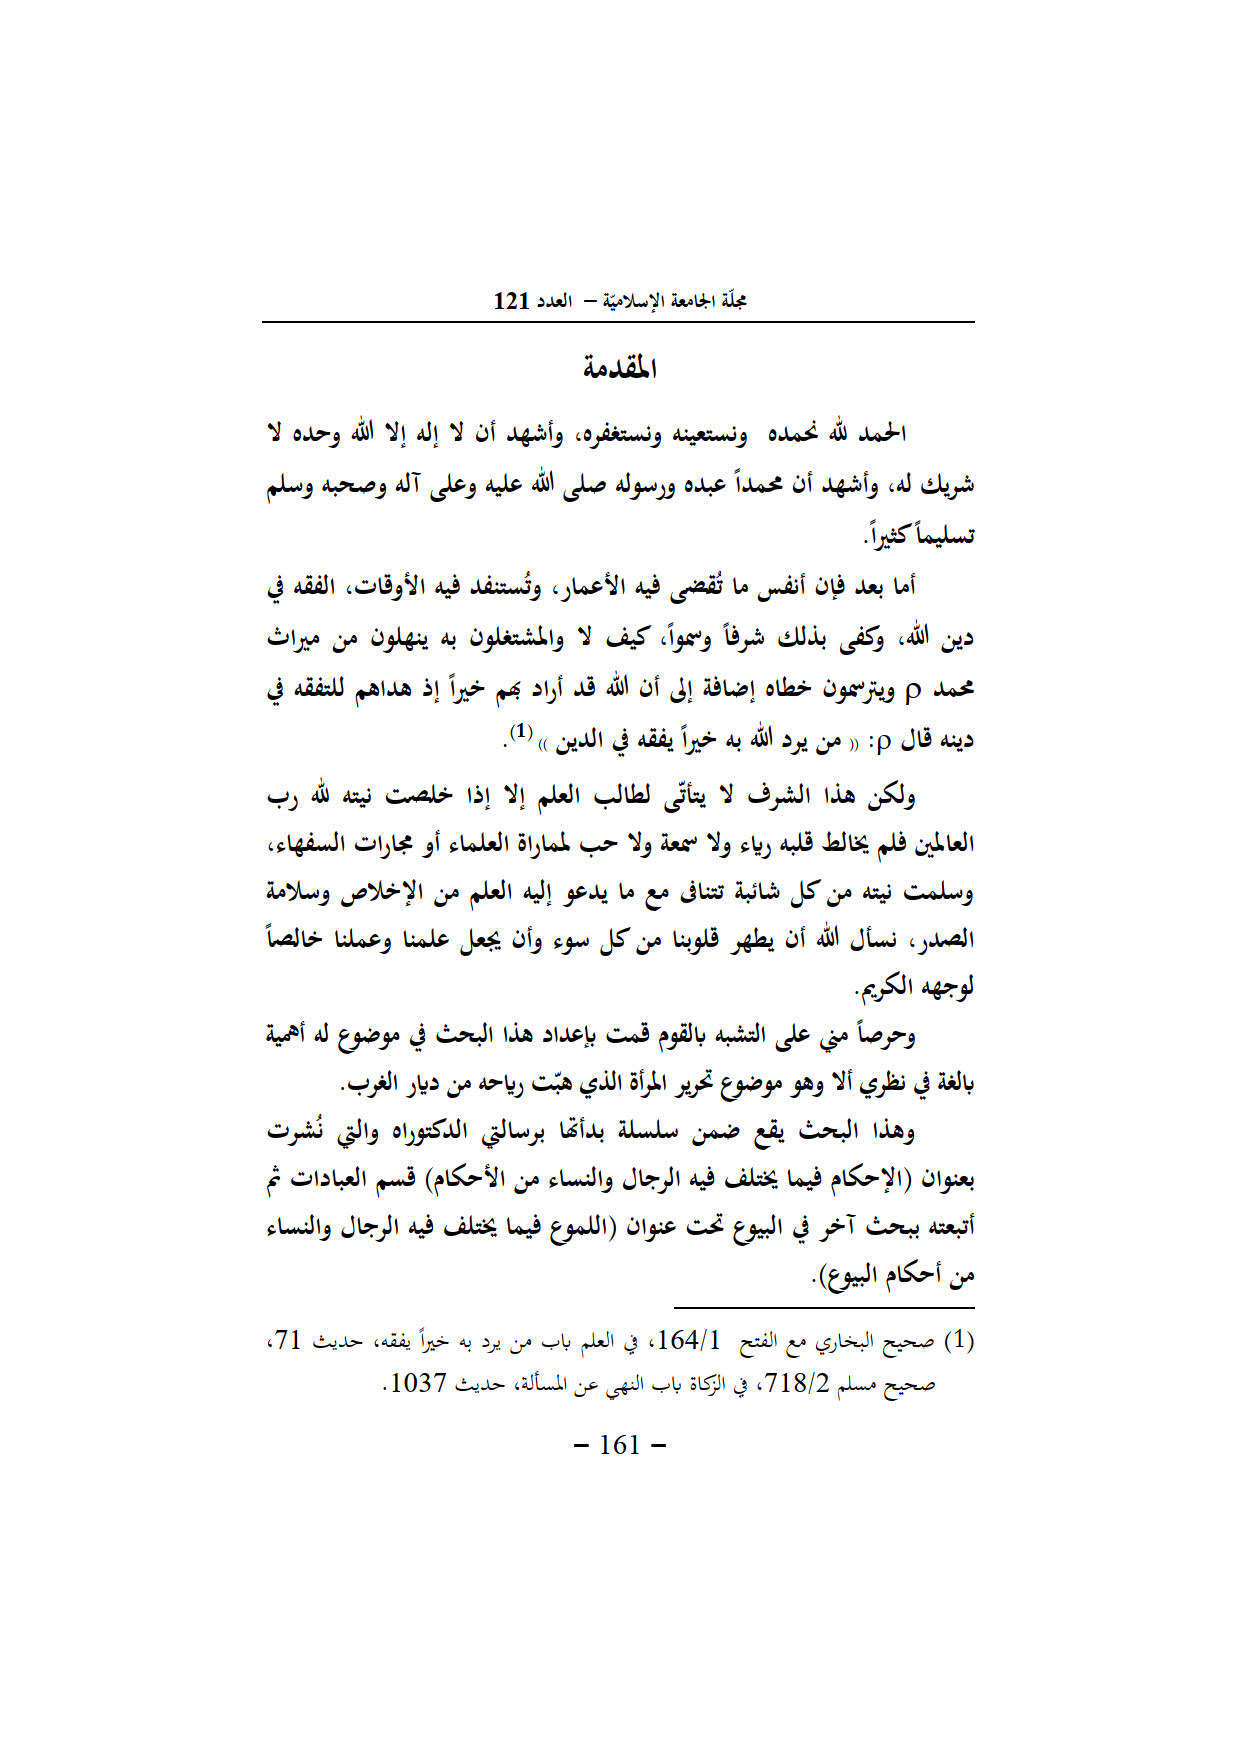 الورقات فيما يختلف فيه الرجال والنساء في أبواب من المعاملات _ بحث في مجلة الجامعة الإسلامية